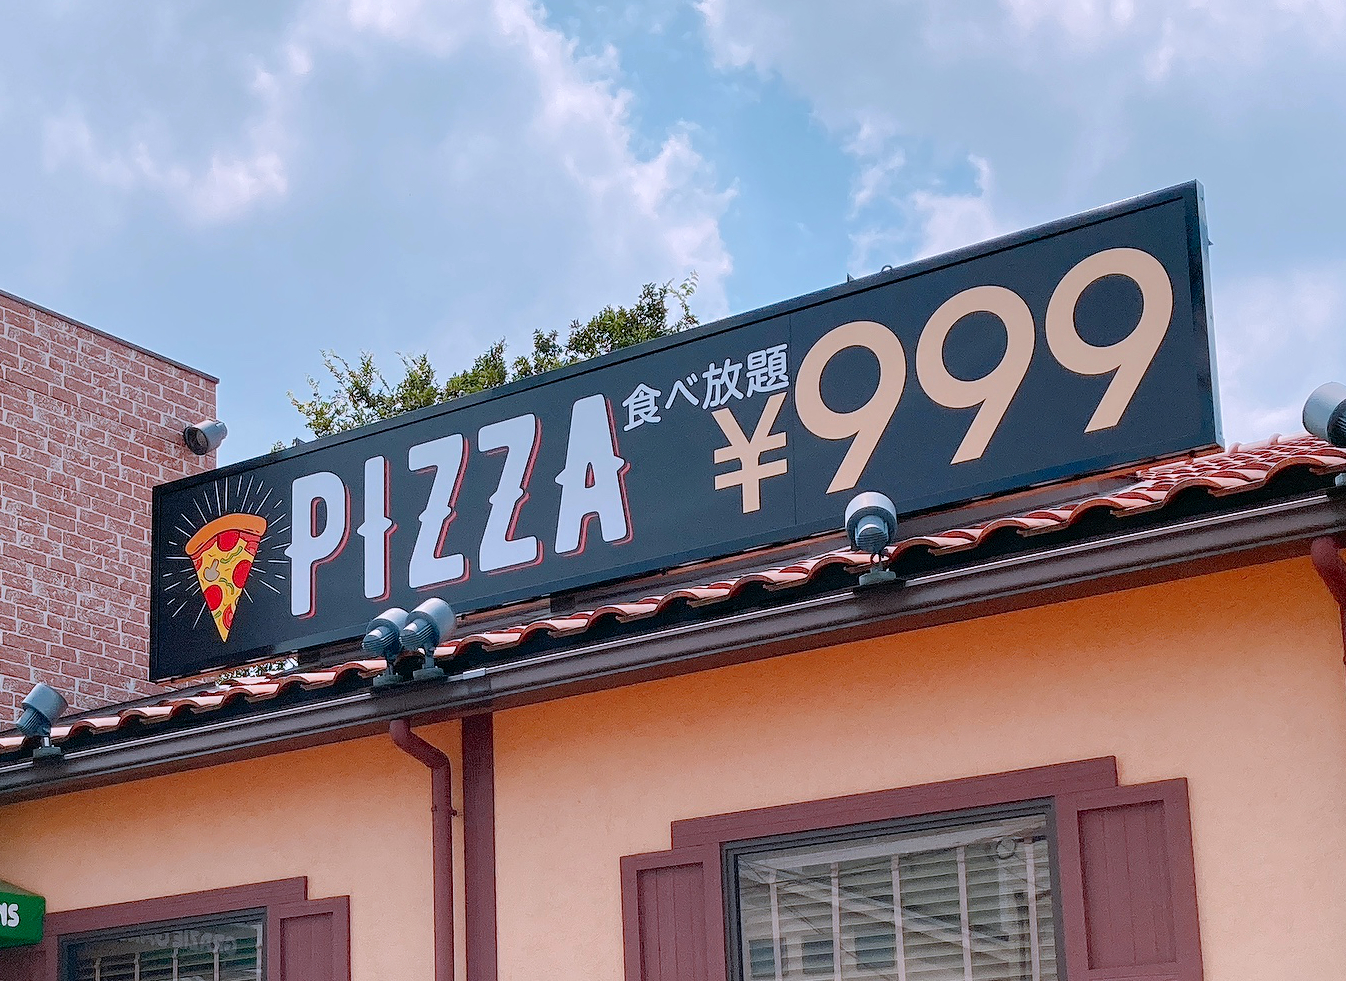 コスパ検証 すかいらーく系のイタリアン グラッチェガーデンズ の999円ピザ食べ放題はお得なのか ロケットニュース24